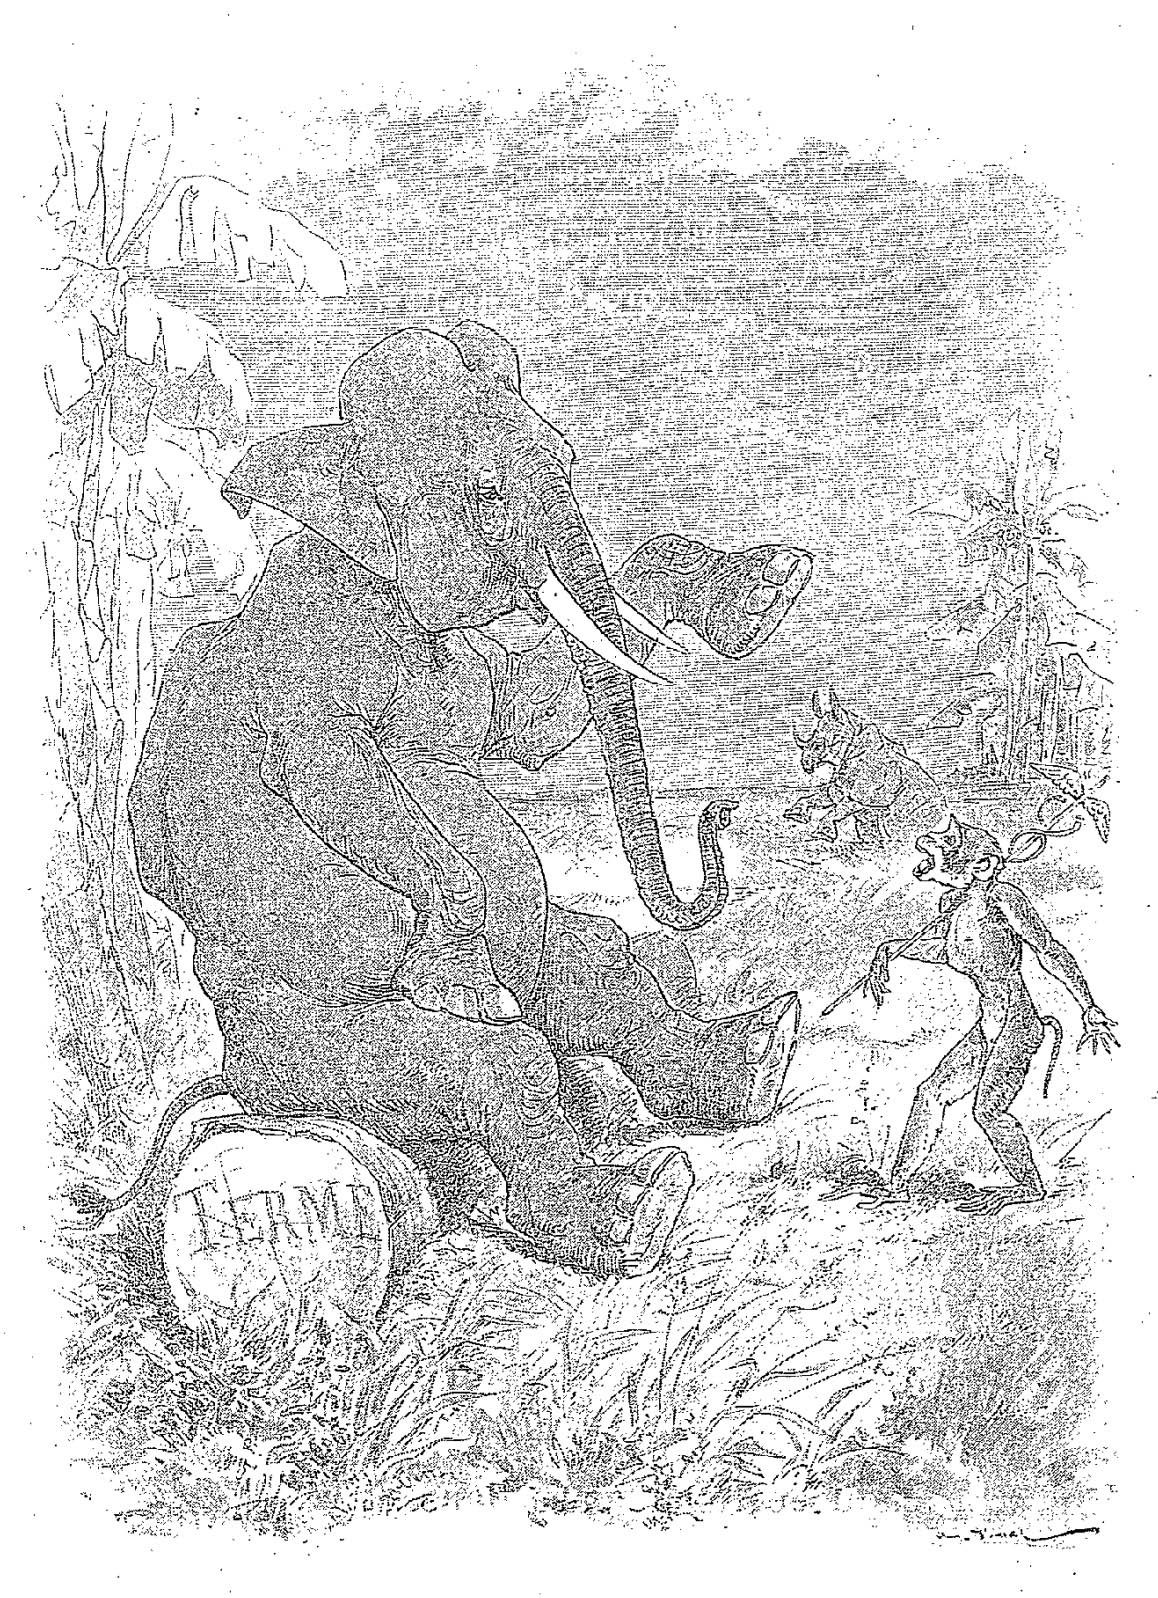 Illustration dessin Vimar fable de La Fontaine l elephant et le singe de jupiter